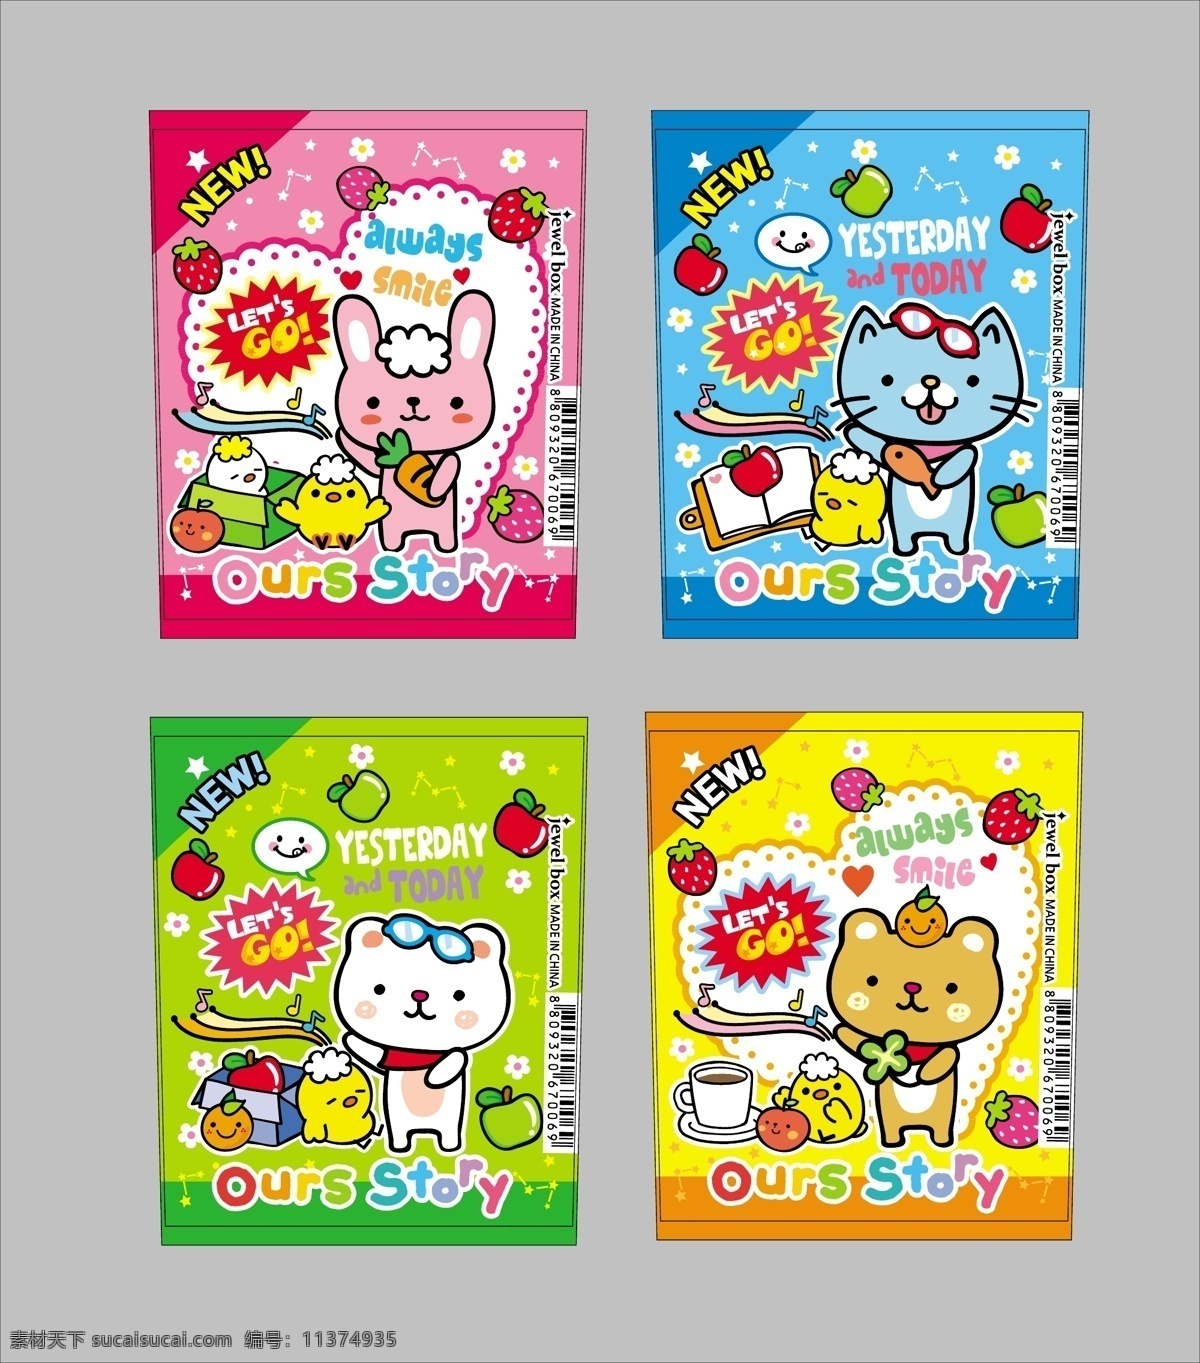 韩国卡通 韩国 卡通 分层 图 文字 底色 爱心 草莓 苹果 小鸡 星星 花朵 儿童幼儿 矢量人物 矢量